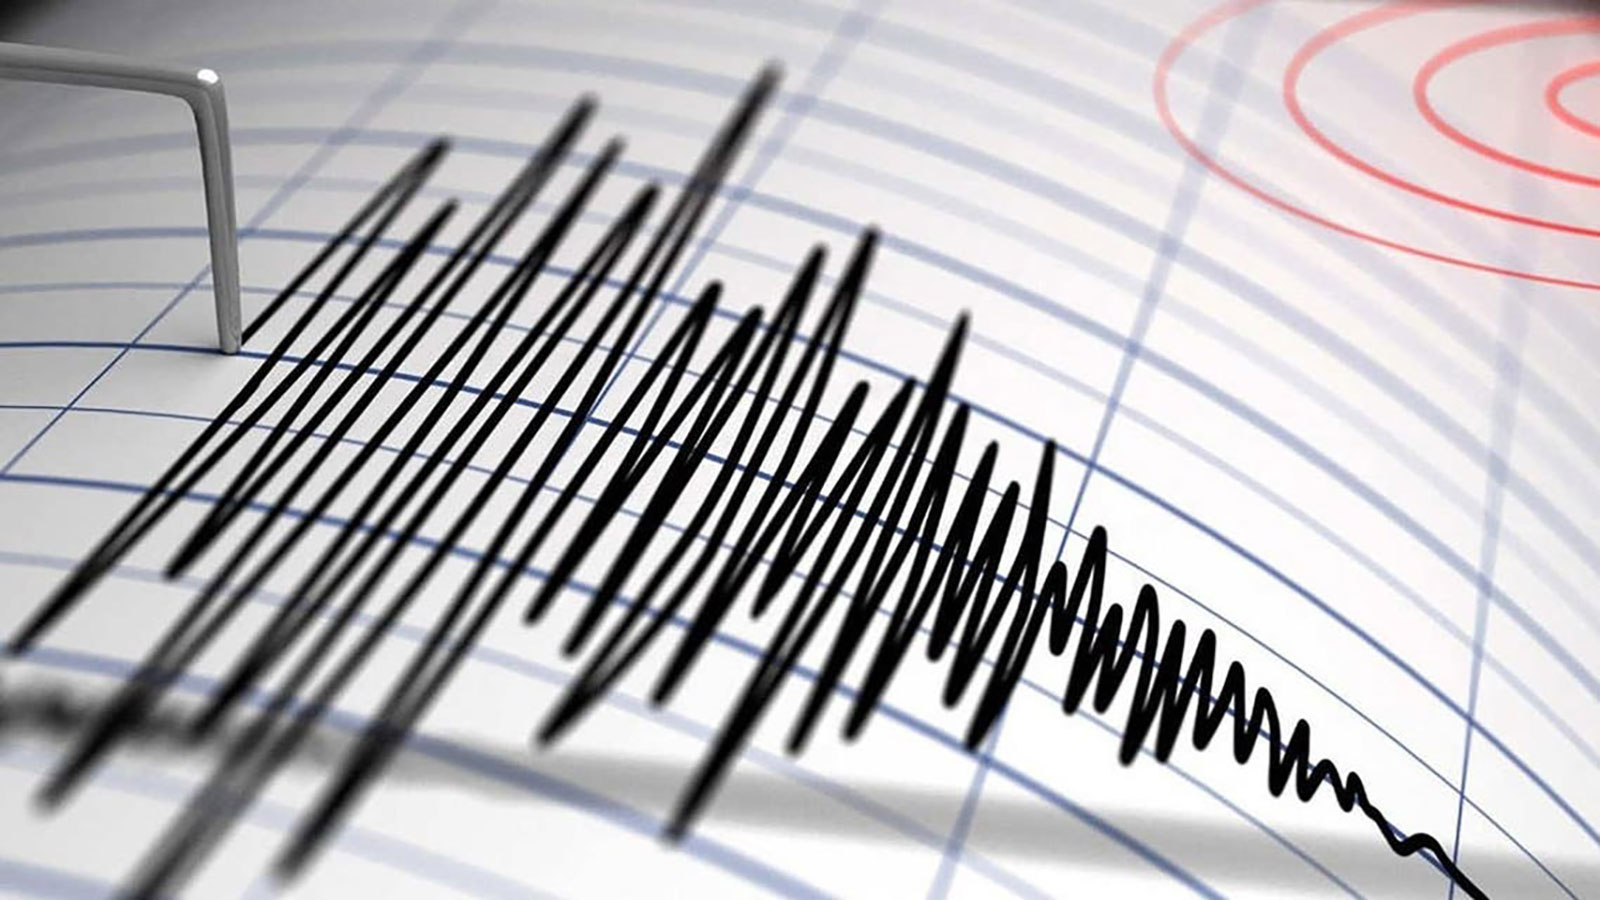 زلزال بقوة 4.1 درجات يضرب تركيا